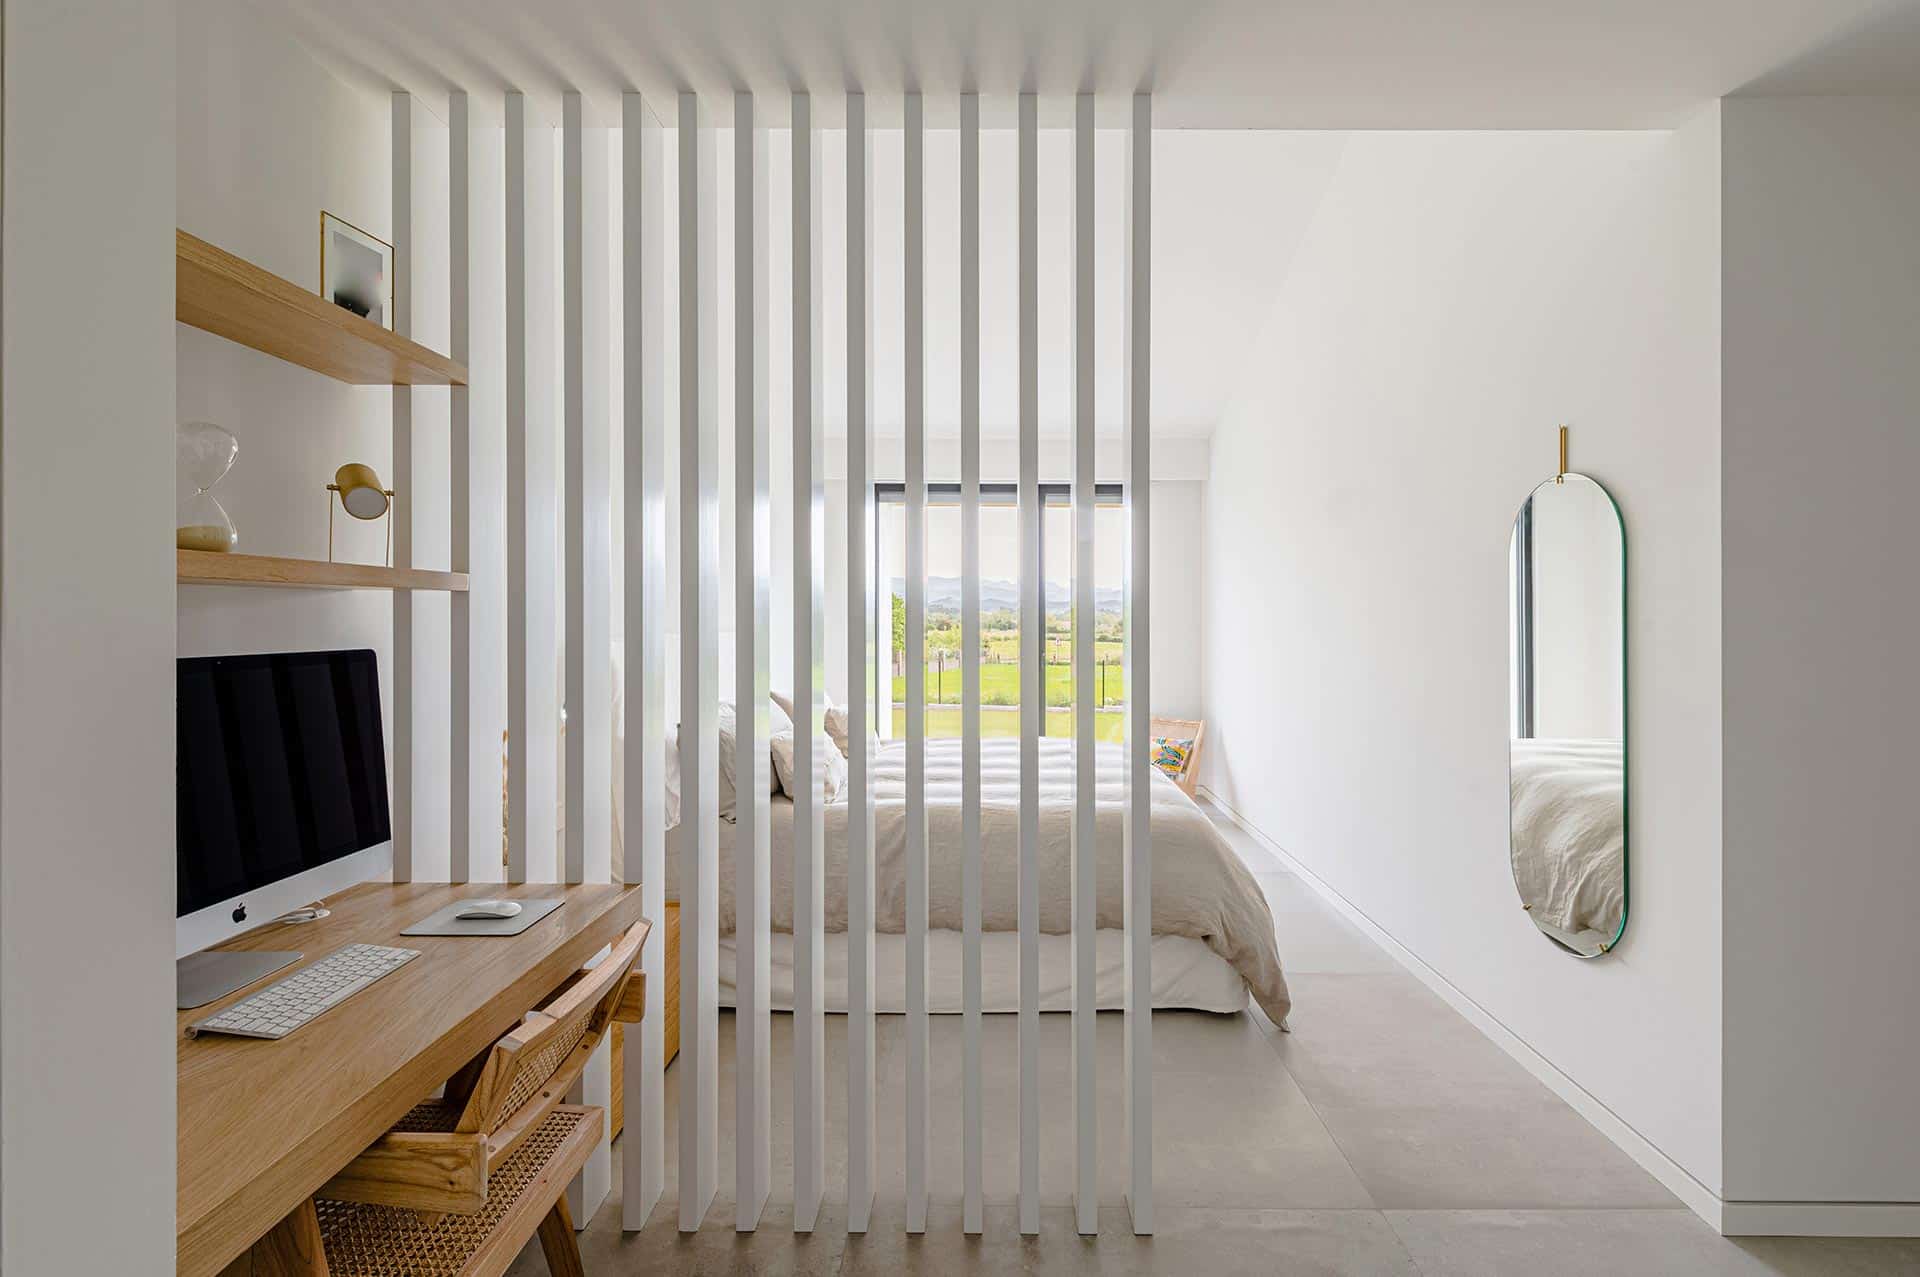 Diseño minimalista de dormitorio con lamas de madera diseñado por Moah Arquitectos en Suesa. Cantabria.